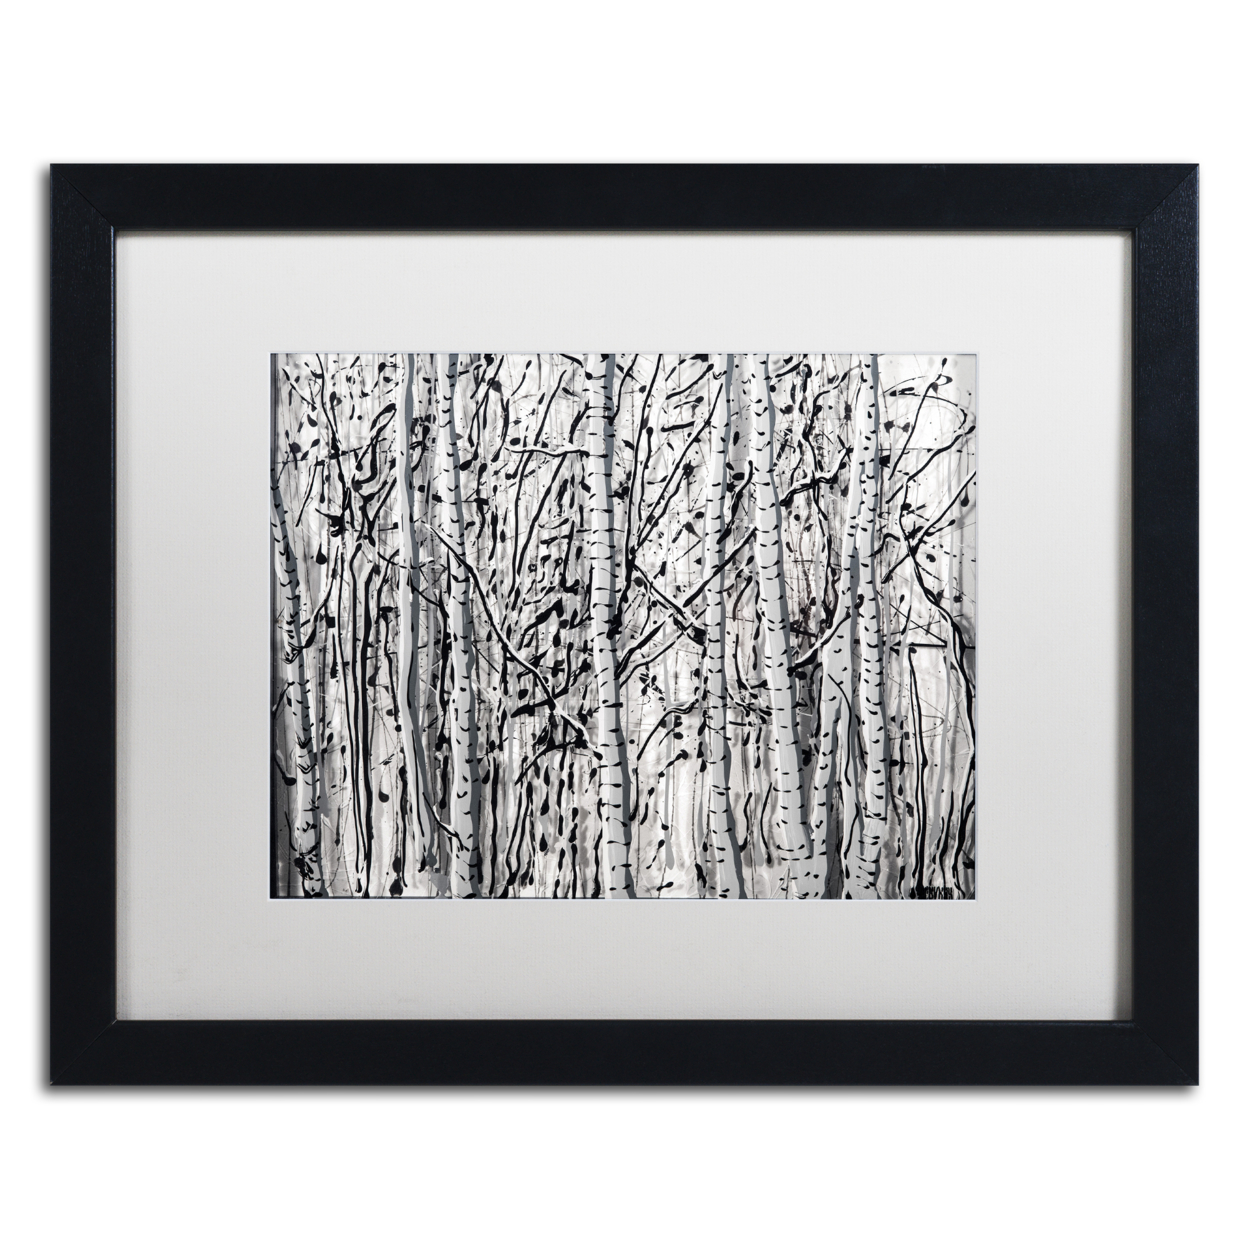 Roderick Stevens 'Winter Aspens' Black Wooden Framed Art 18 X 22 Inches